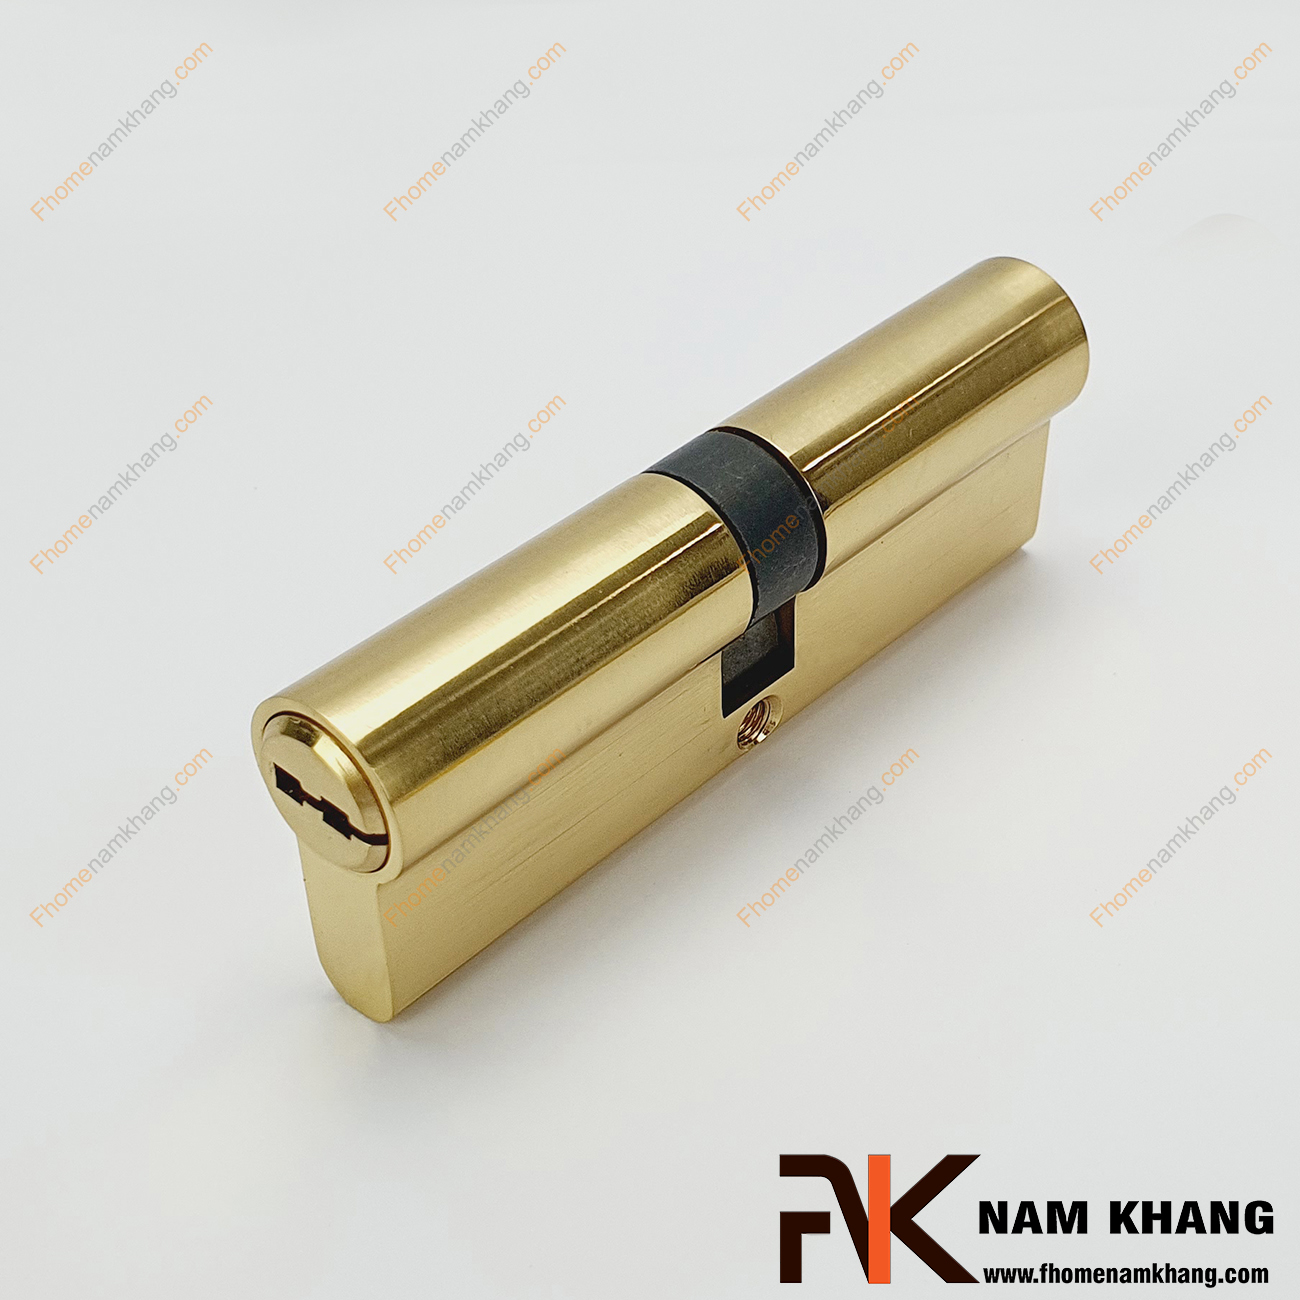 Củ khóa cửa chính NK261CC-9DV là loại linh kiện cao cấp dùng để thay thế vào các bộ khóa cửa hoặc lắp đặt mới cho bộ khóa cửa.